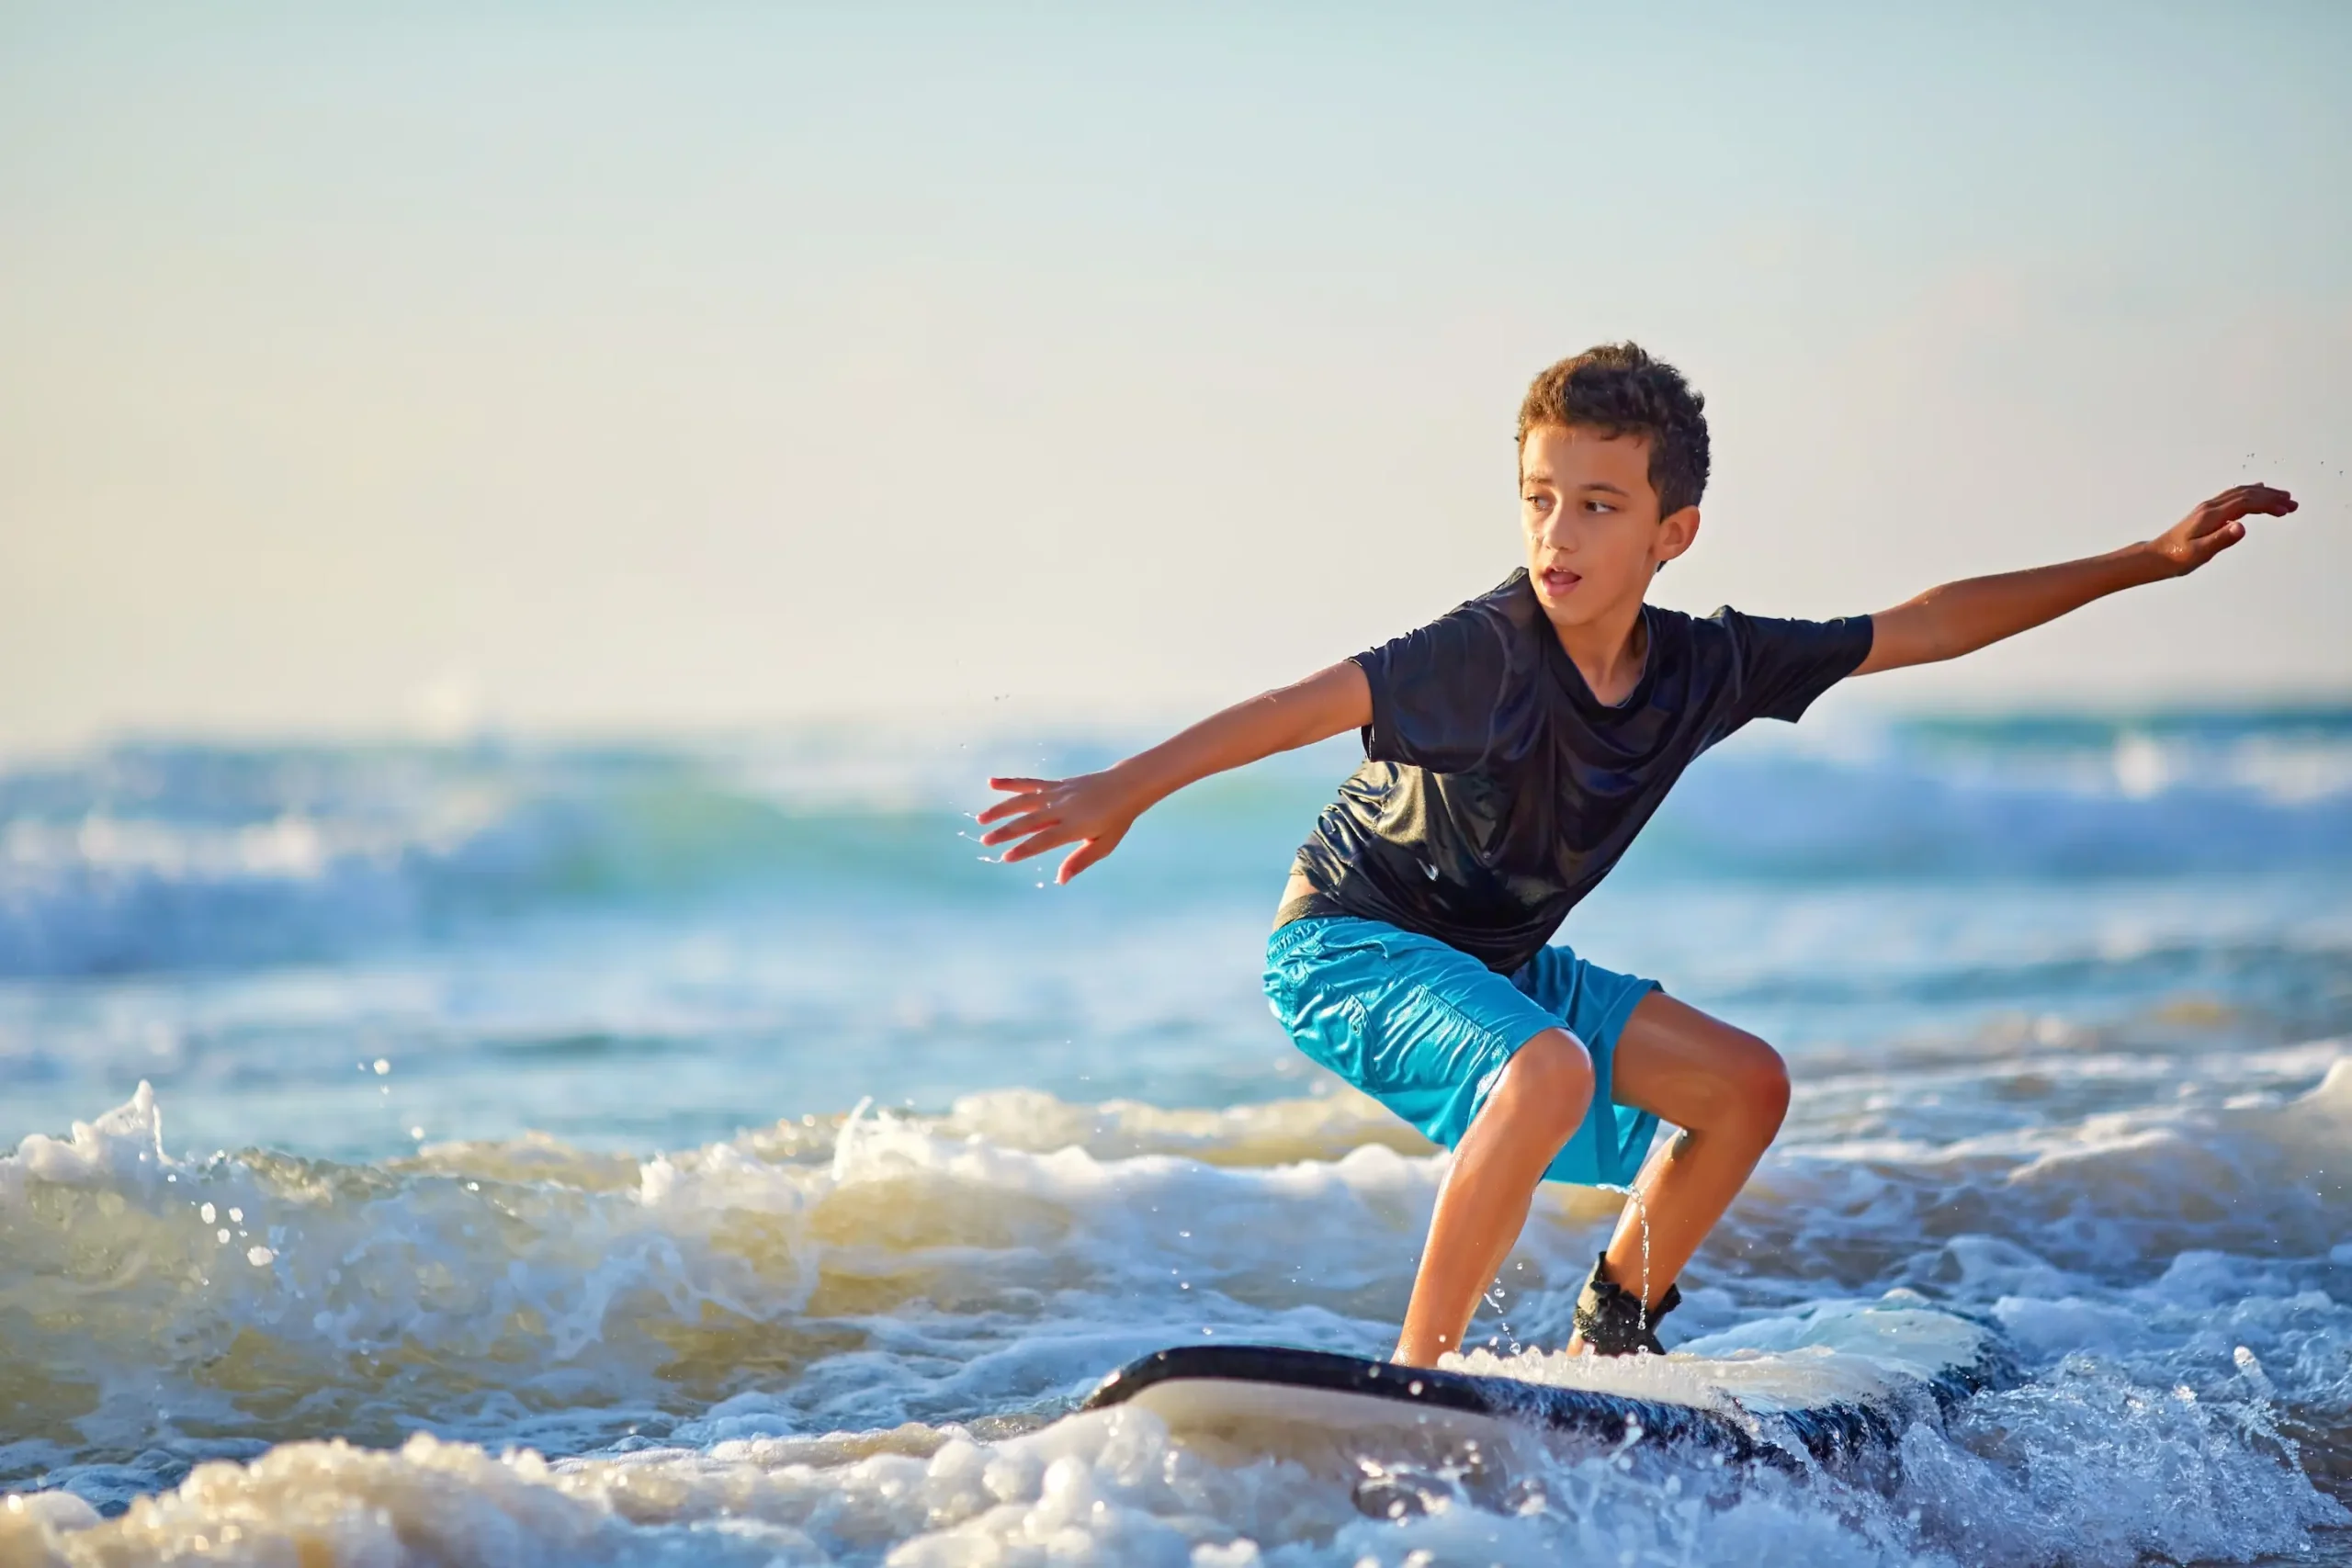 Skilled teenager riding surfboard and balancing a long wavy sea